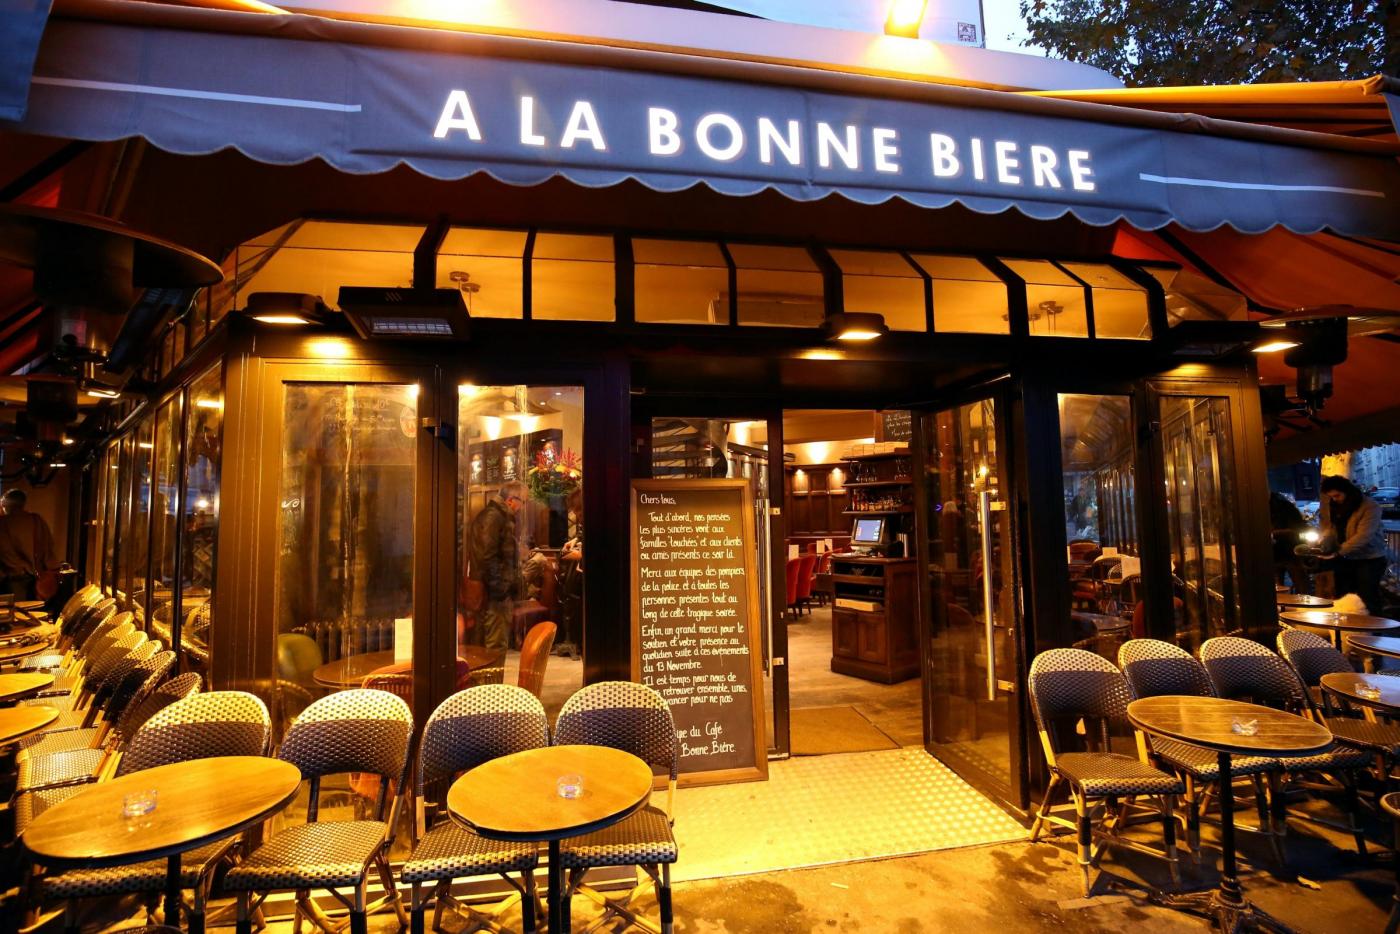 Riapertura del 'Cafe' a la Bonne Bier' dopo l'attacco terroristico del 13 novembre